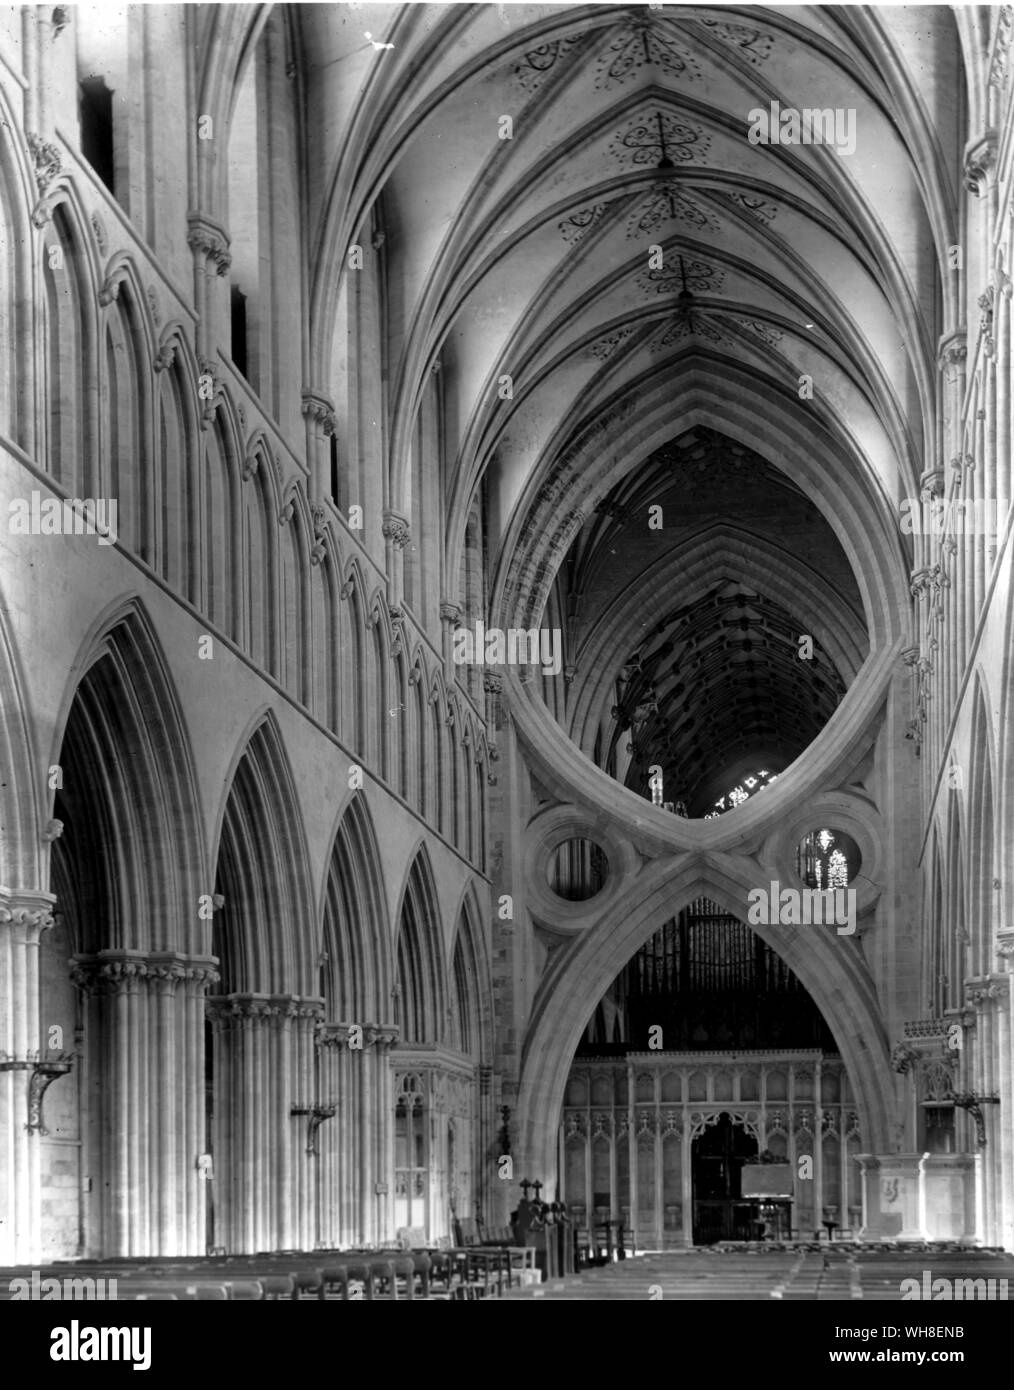 Techo abovedado de la Catedral de Wells, Somerset. Foto de stock